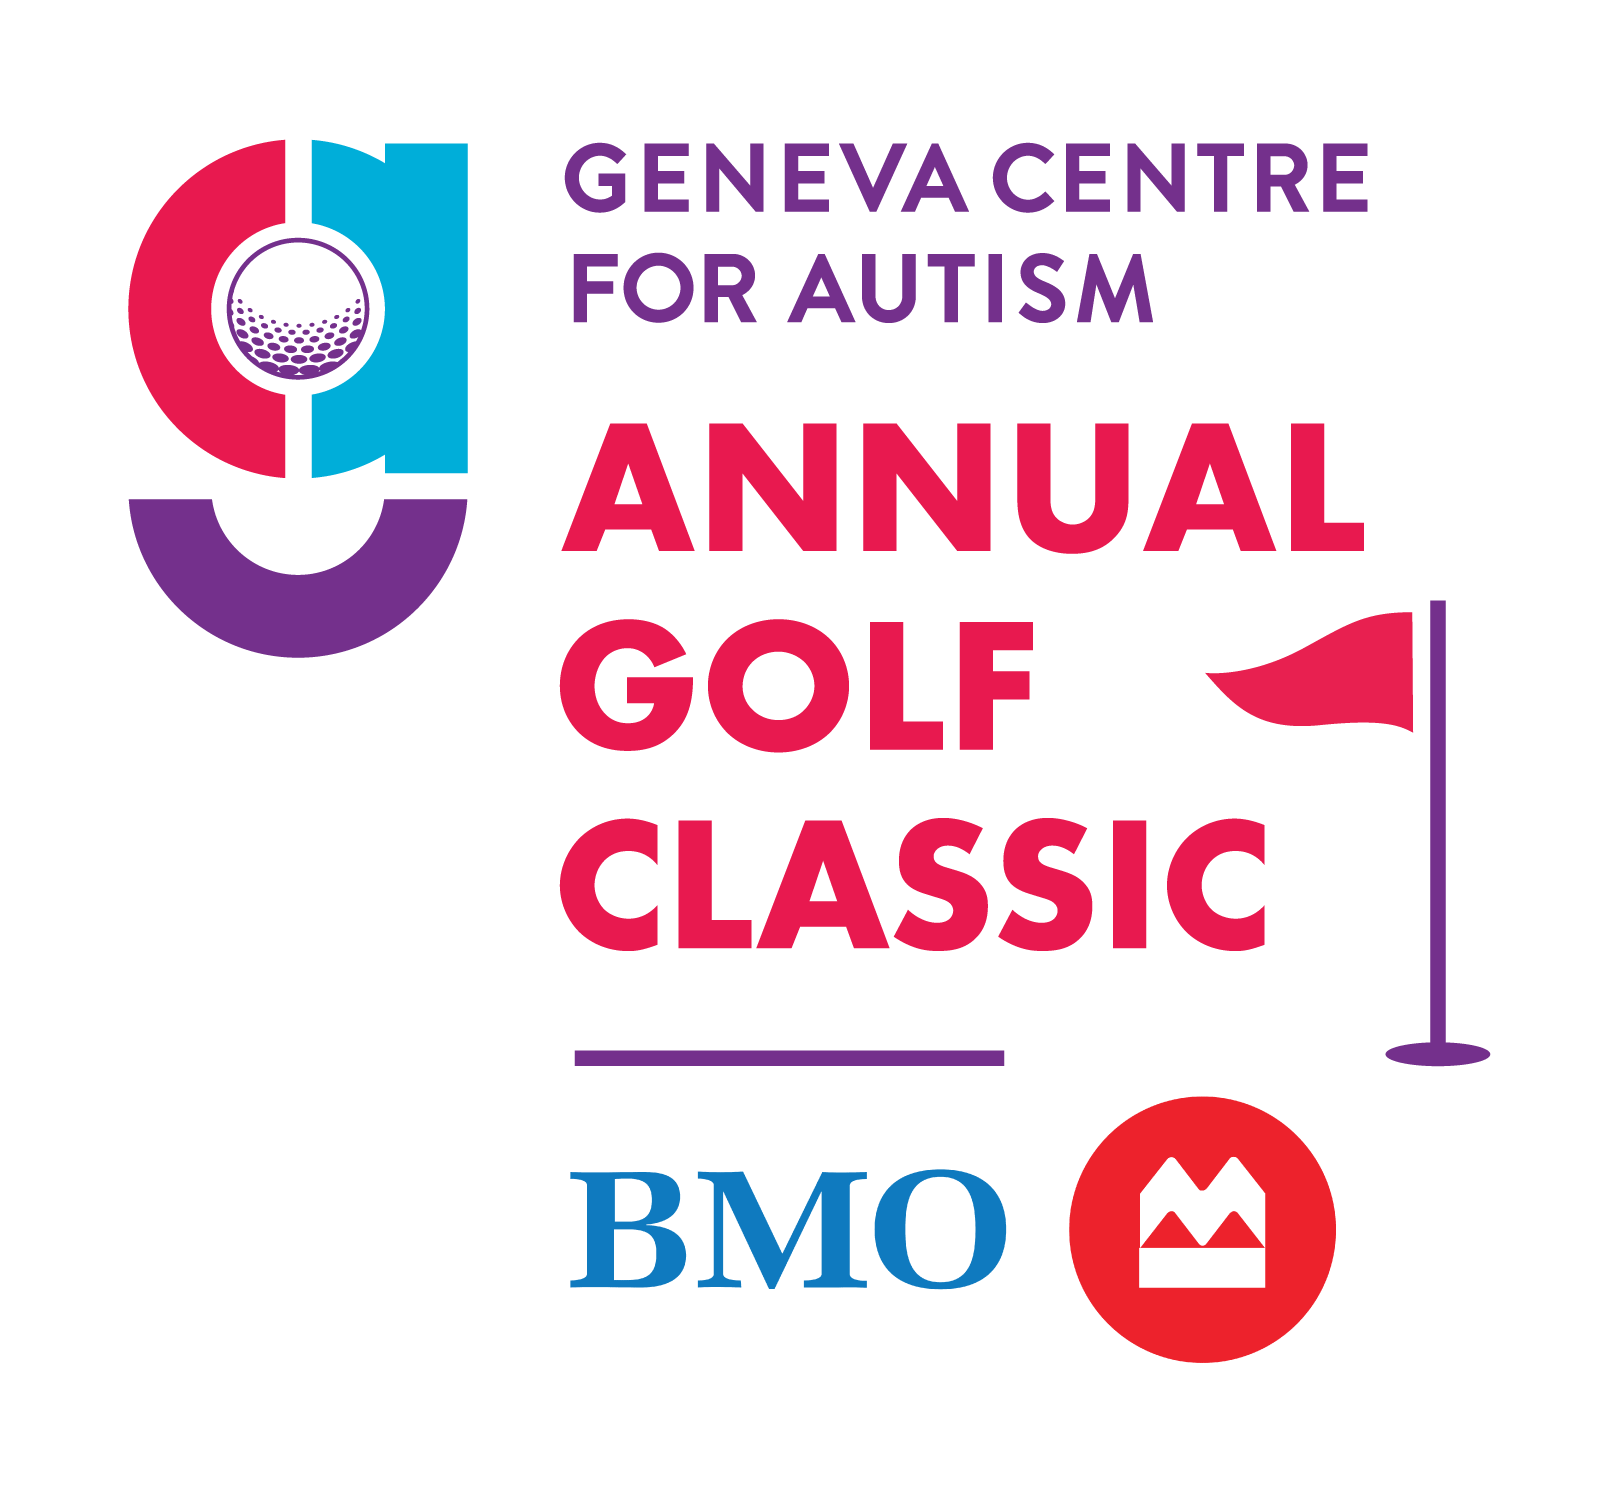 Geneva Centre for Autism Annual Golf Classic Tournament